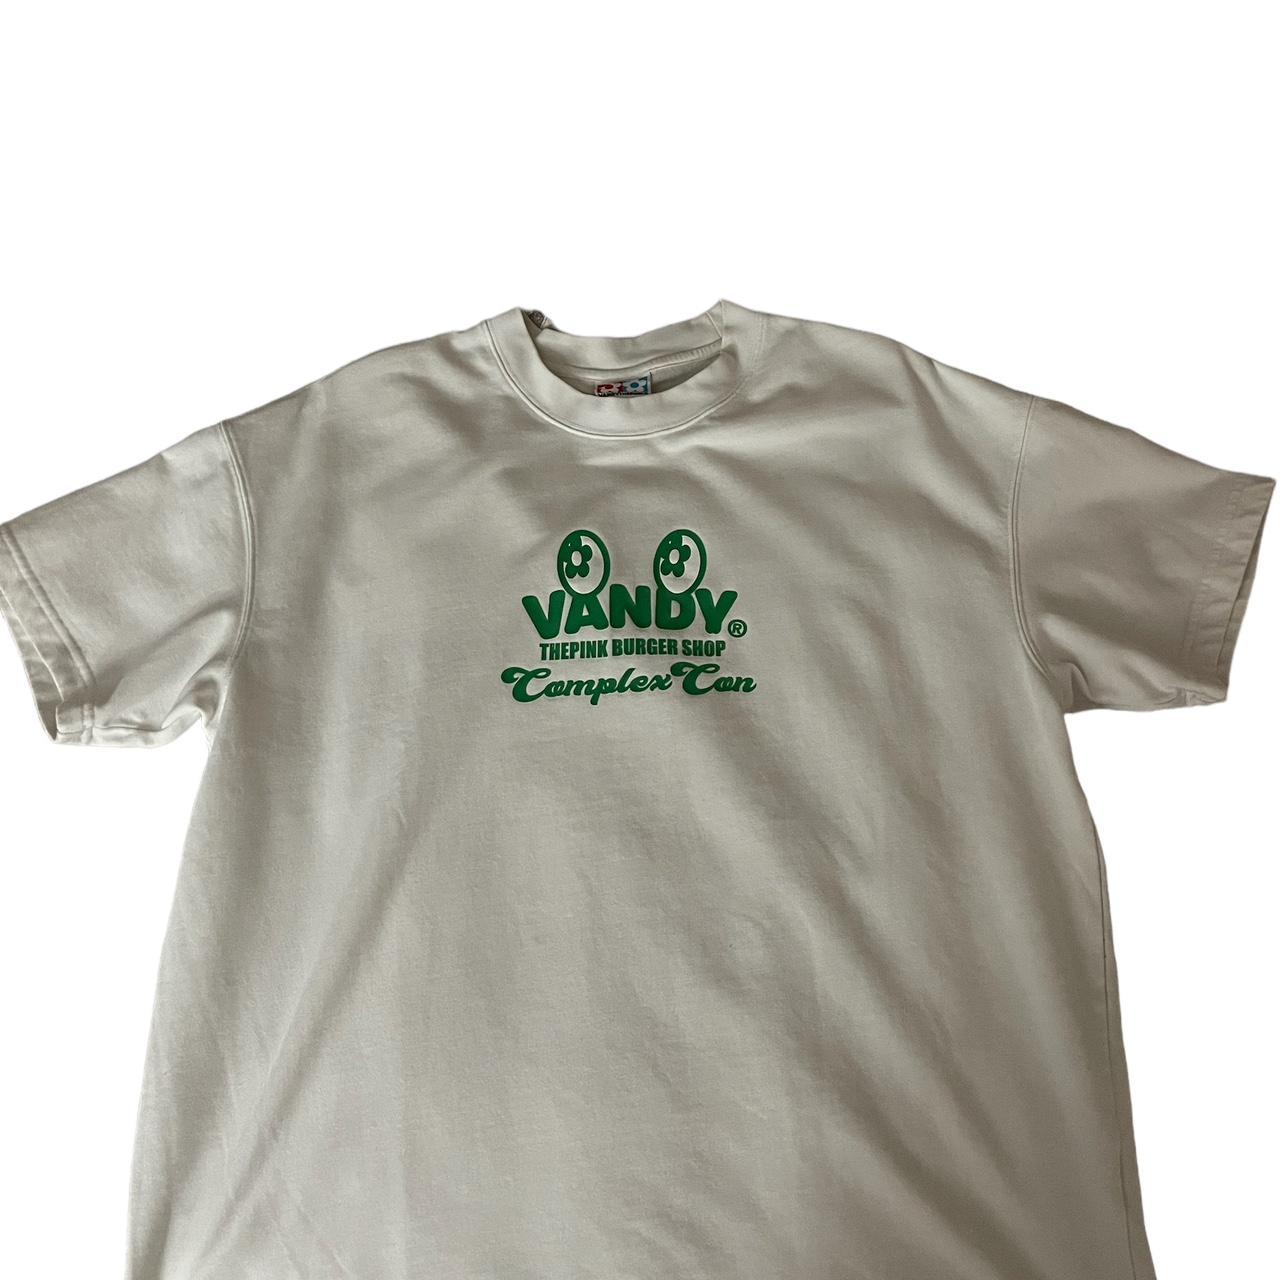 Vandy thepink lv vest Size XL - Depop